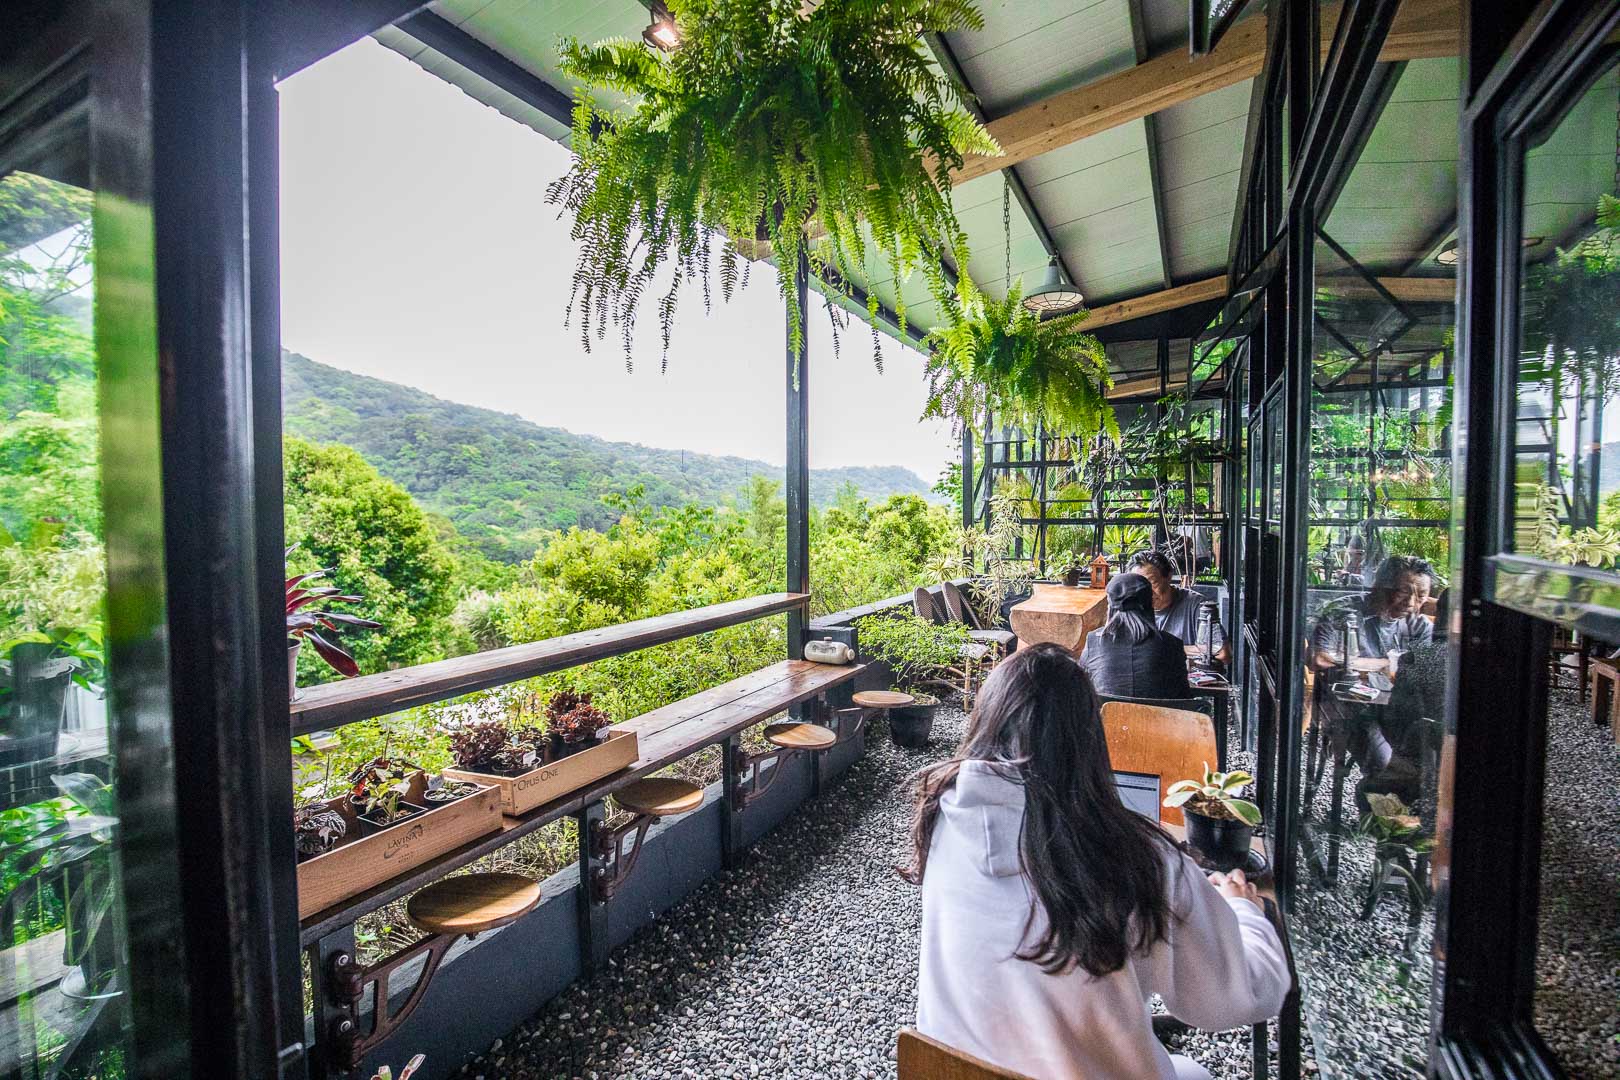 陽明山景點,陽明山咖啡廳,陽明山景觀咖啡,台北景觀咖啡,陽明山玻璃屋景觀咖啡,台北美食,陽明山美食